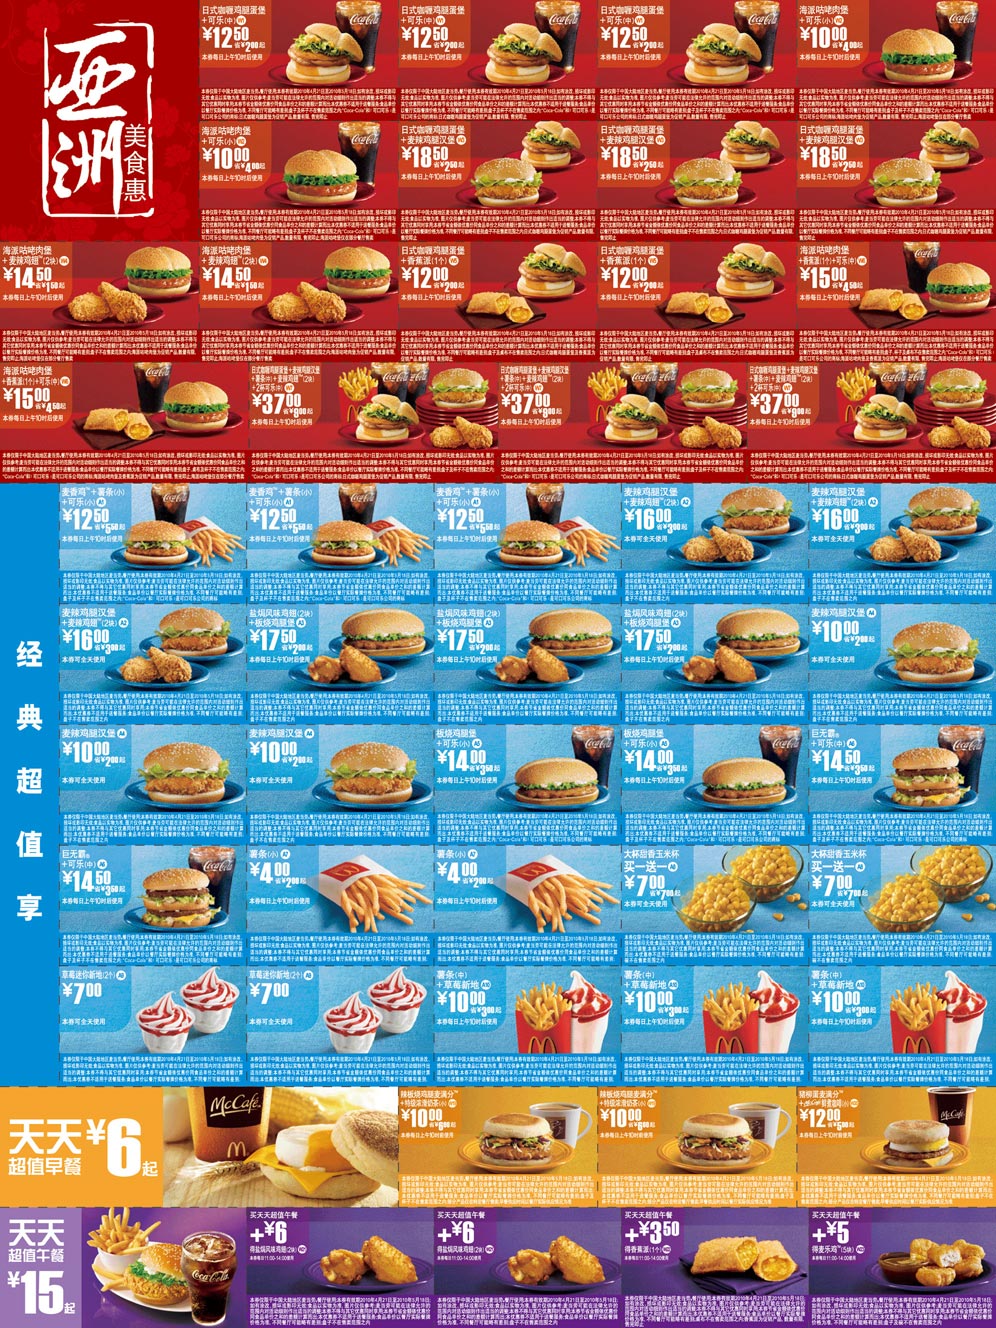 麦当劳优惠券:麦当劳优惠券2010年4月5月整张打印版，只需1张A4纸 有效期2010年4月21日-2010年5月18日 使用范围:全国麦当劳餐厅(上海地区除外)